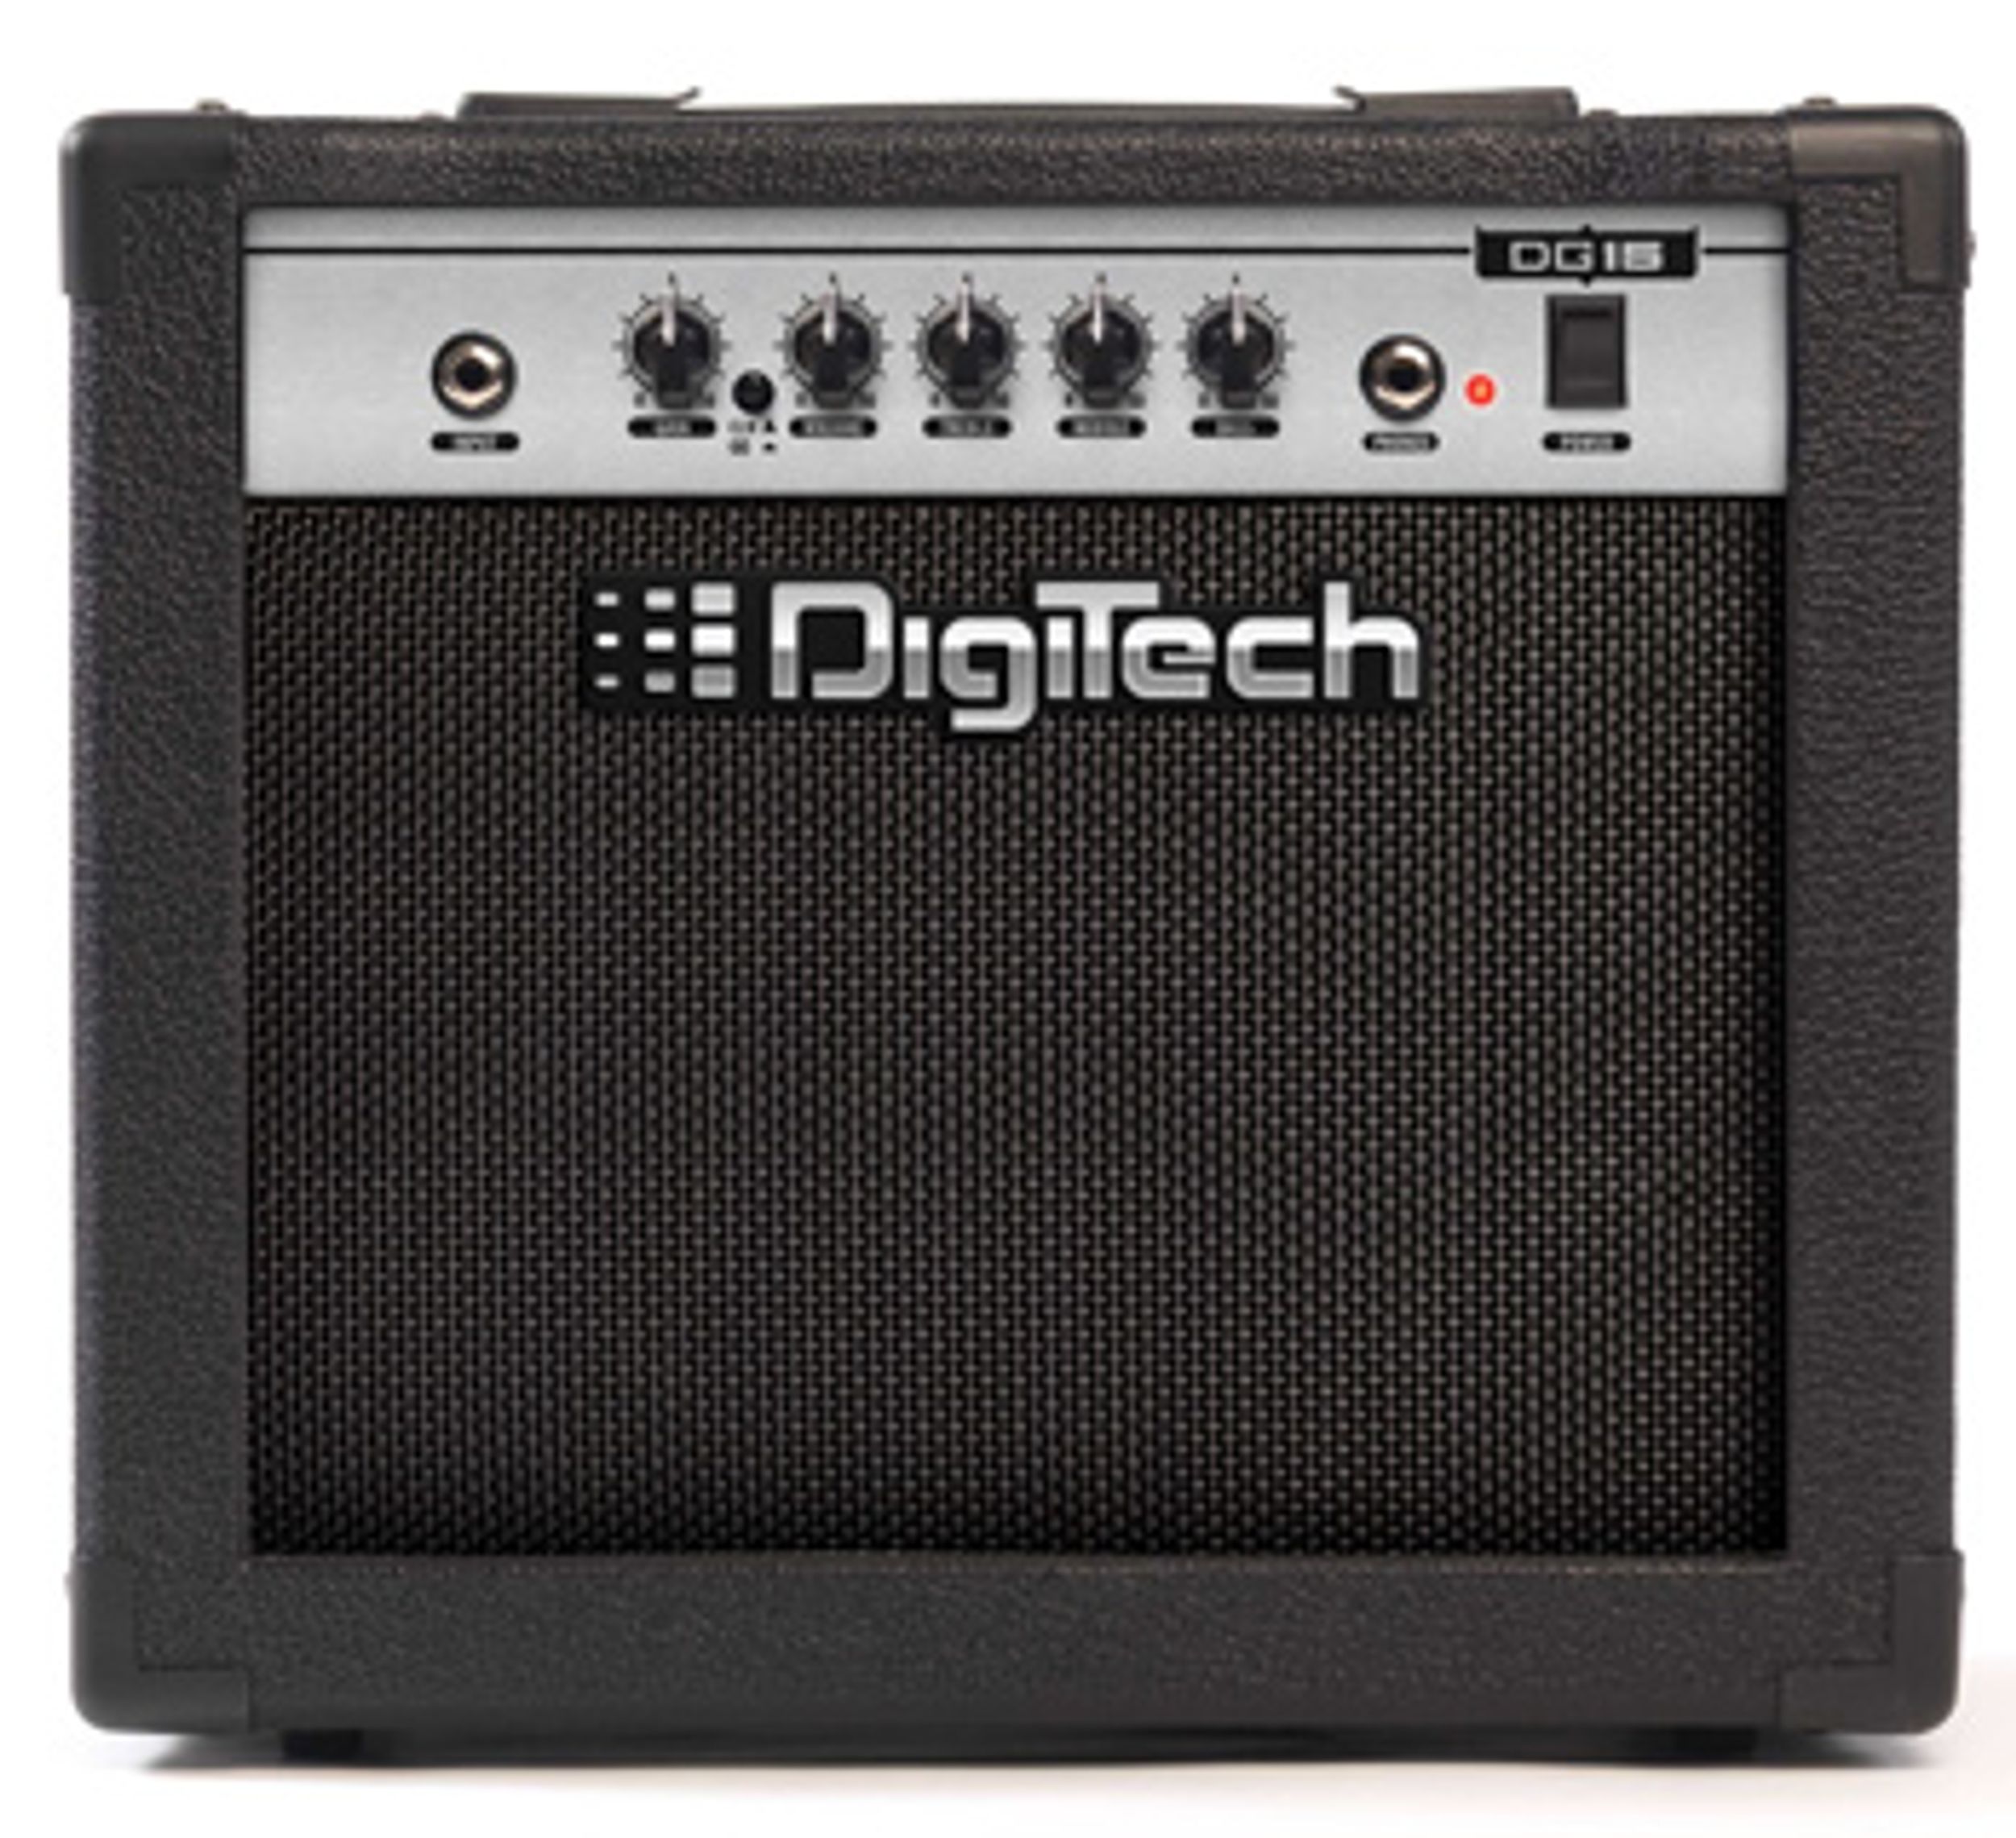 DigiTech Ships 15-Watt Guitar and Bass Combo Amps